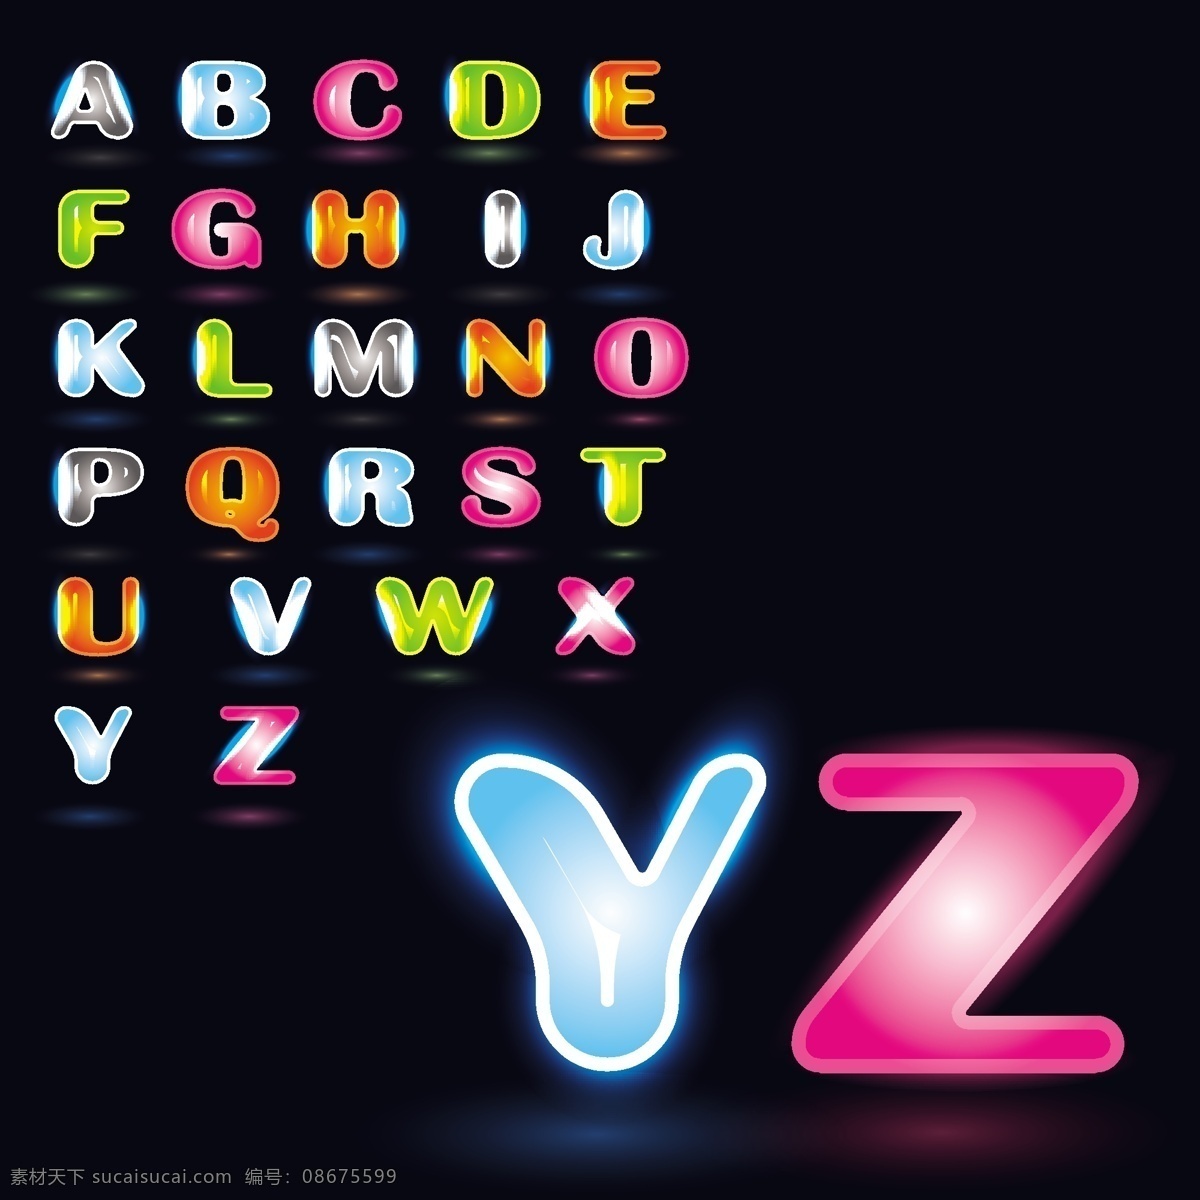 创意字母 多彩 矢量 卡通字母 可爱字母 其他设计 星光 英文字母 炫彩 动感 字母 模板下载 拼音字母 儿童字母 字母主题 矢量图 艺术字